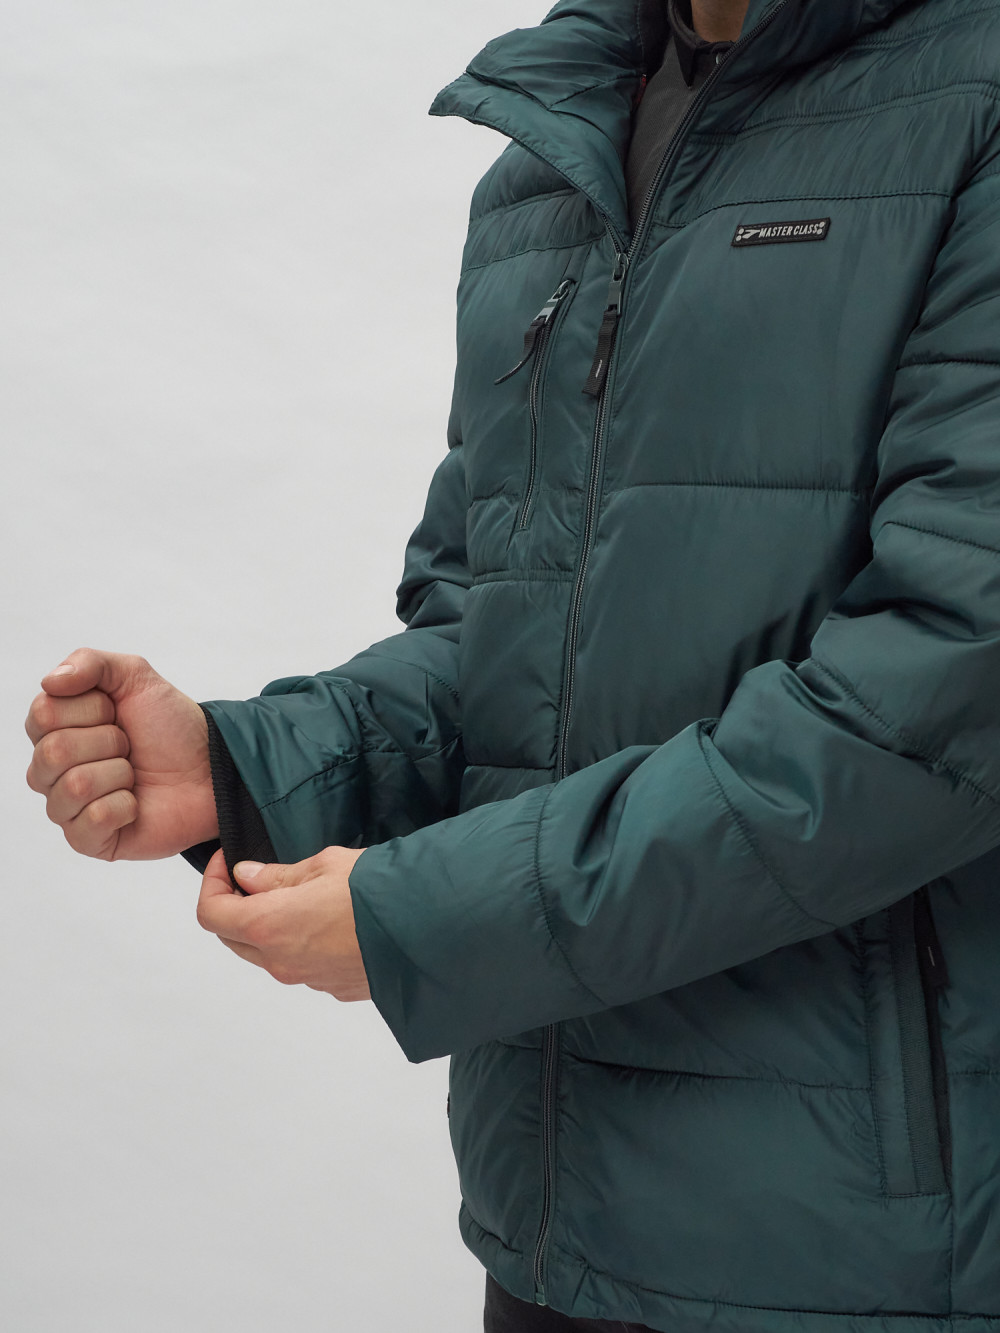 Купить куртку мужскую спортивную весеннюю оптом от производителя недорого в Москве 62190TZ 1